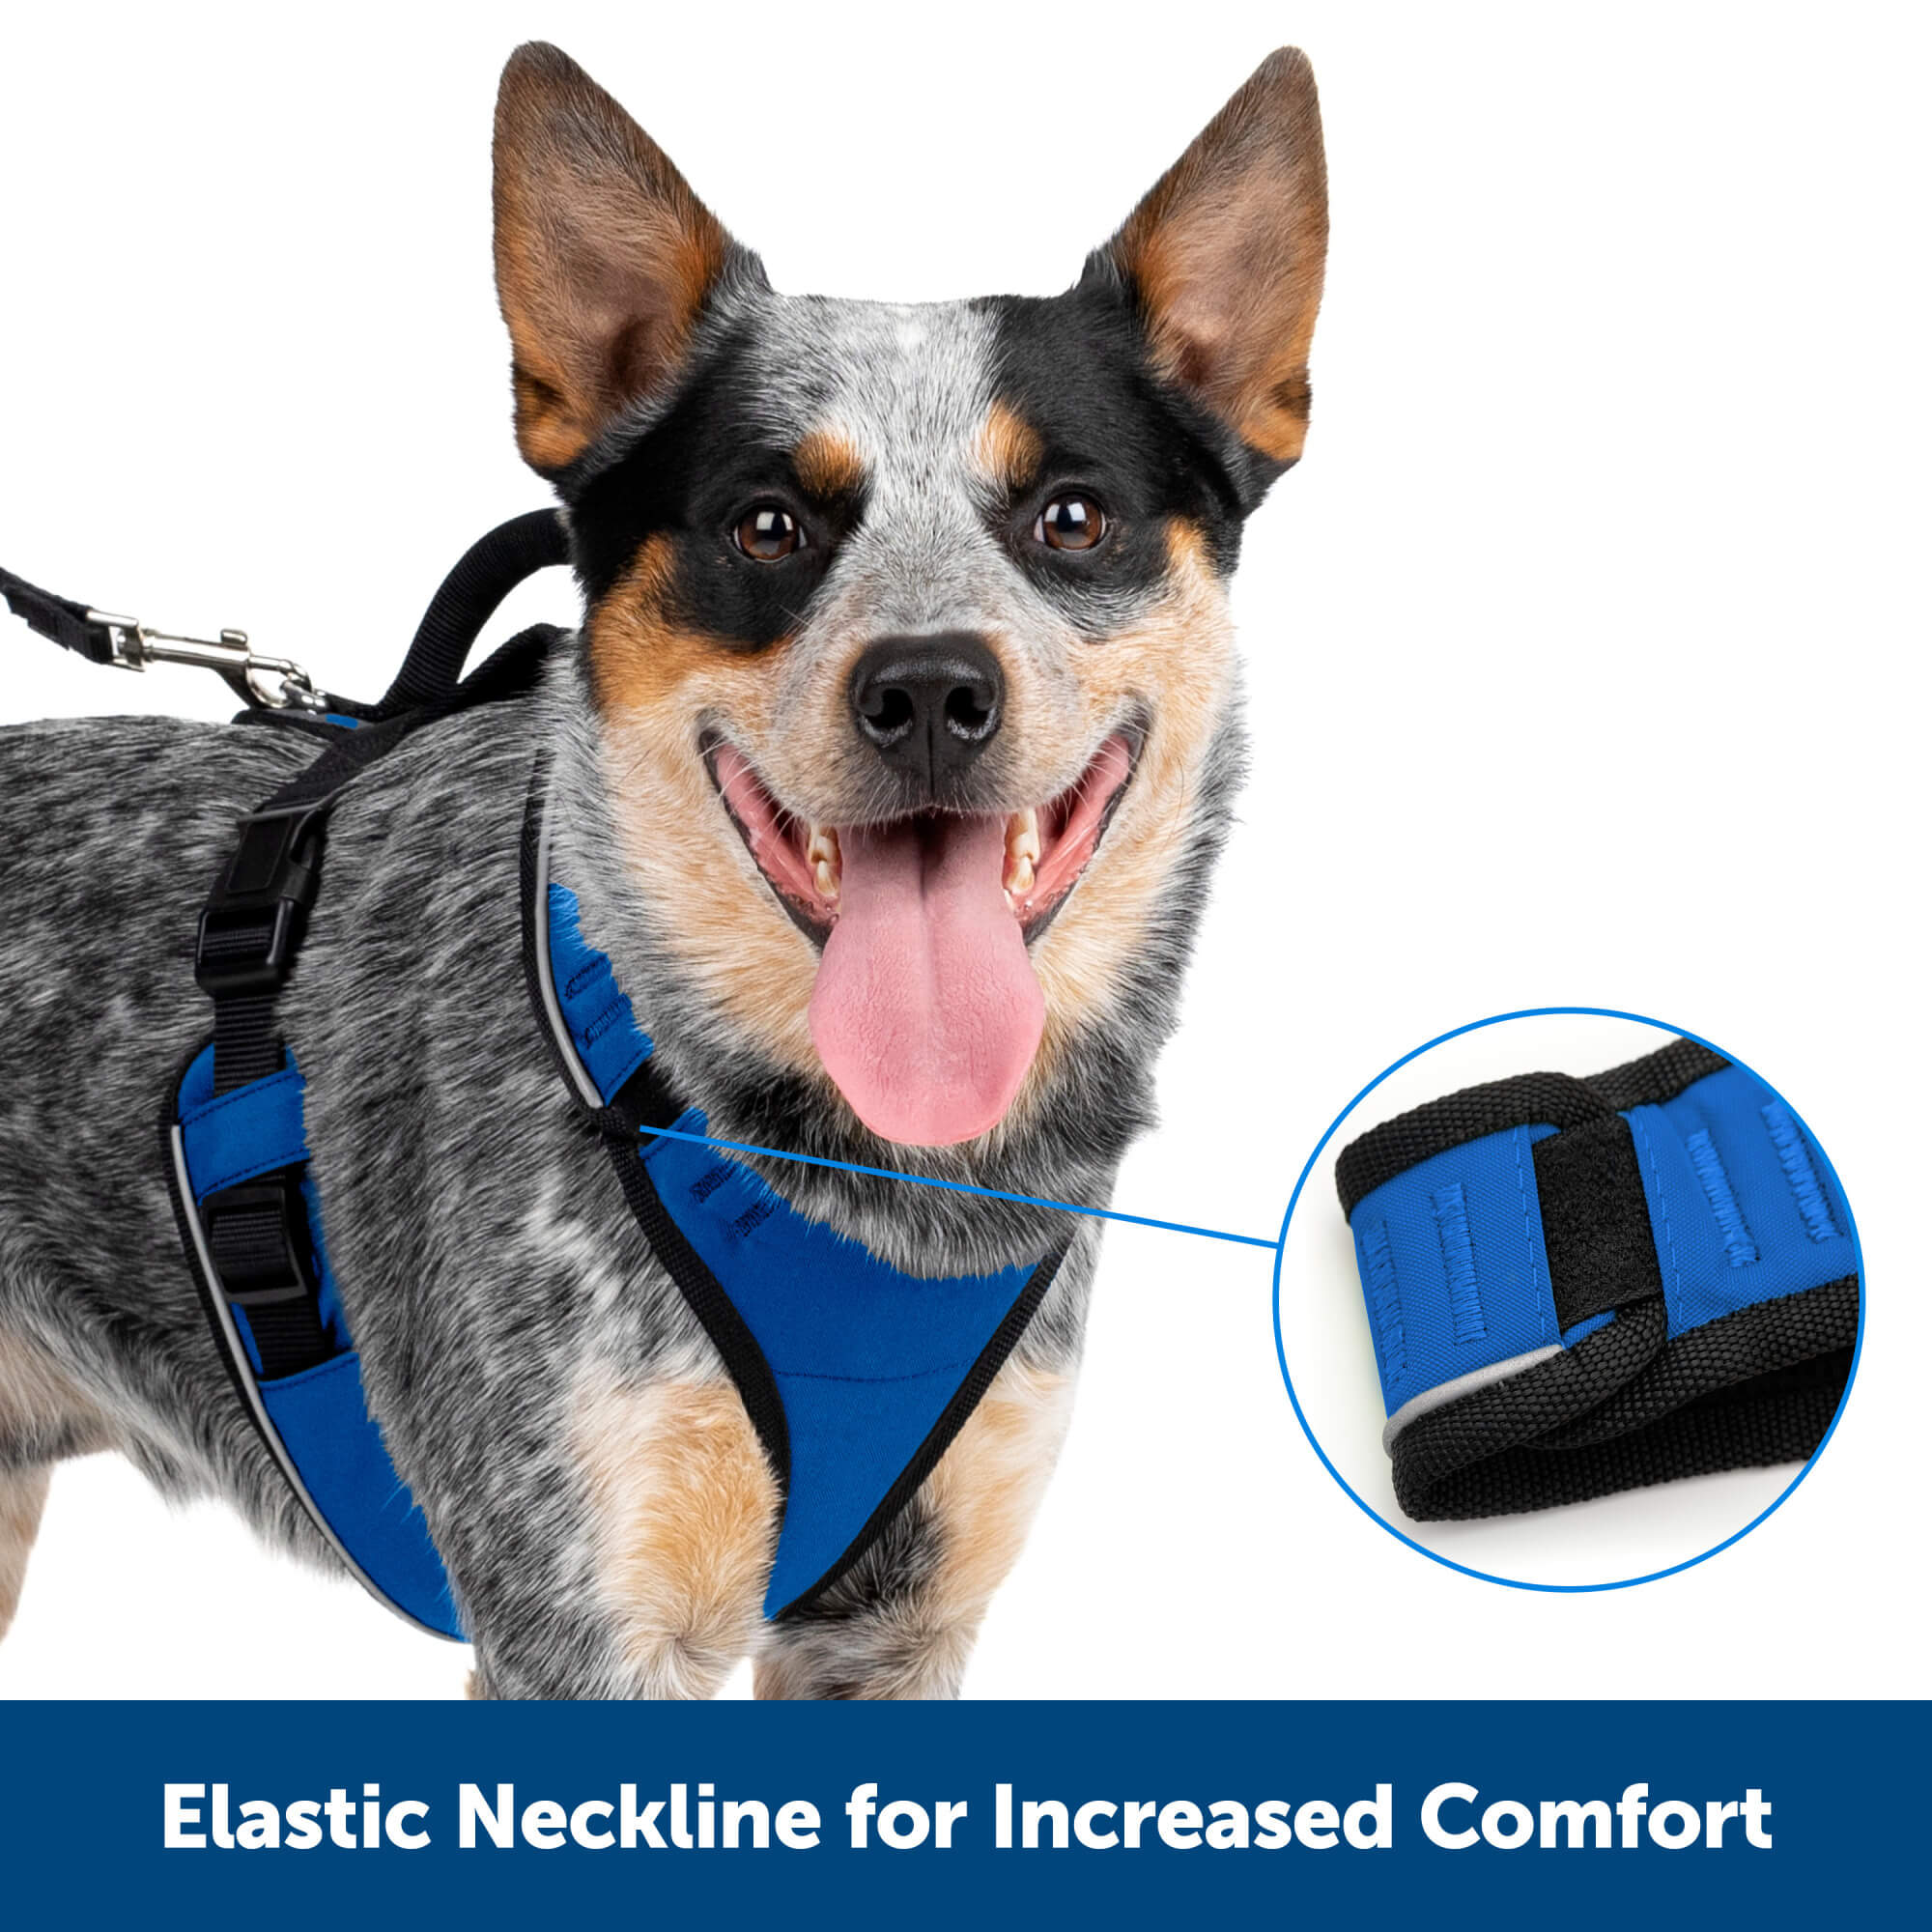 PetSafe Elastic neckline for increased comfort